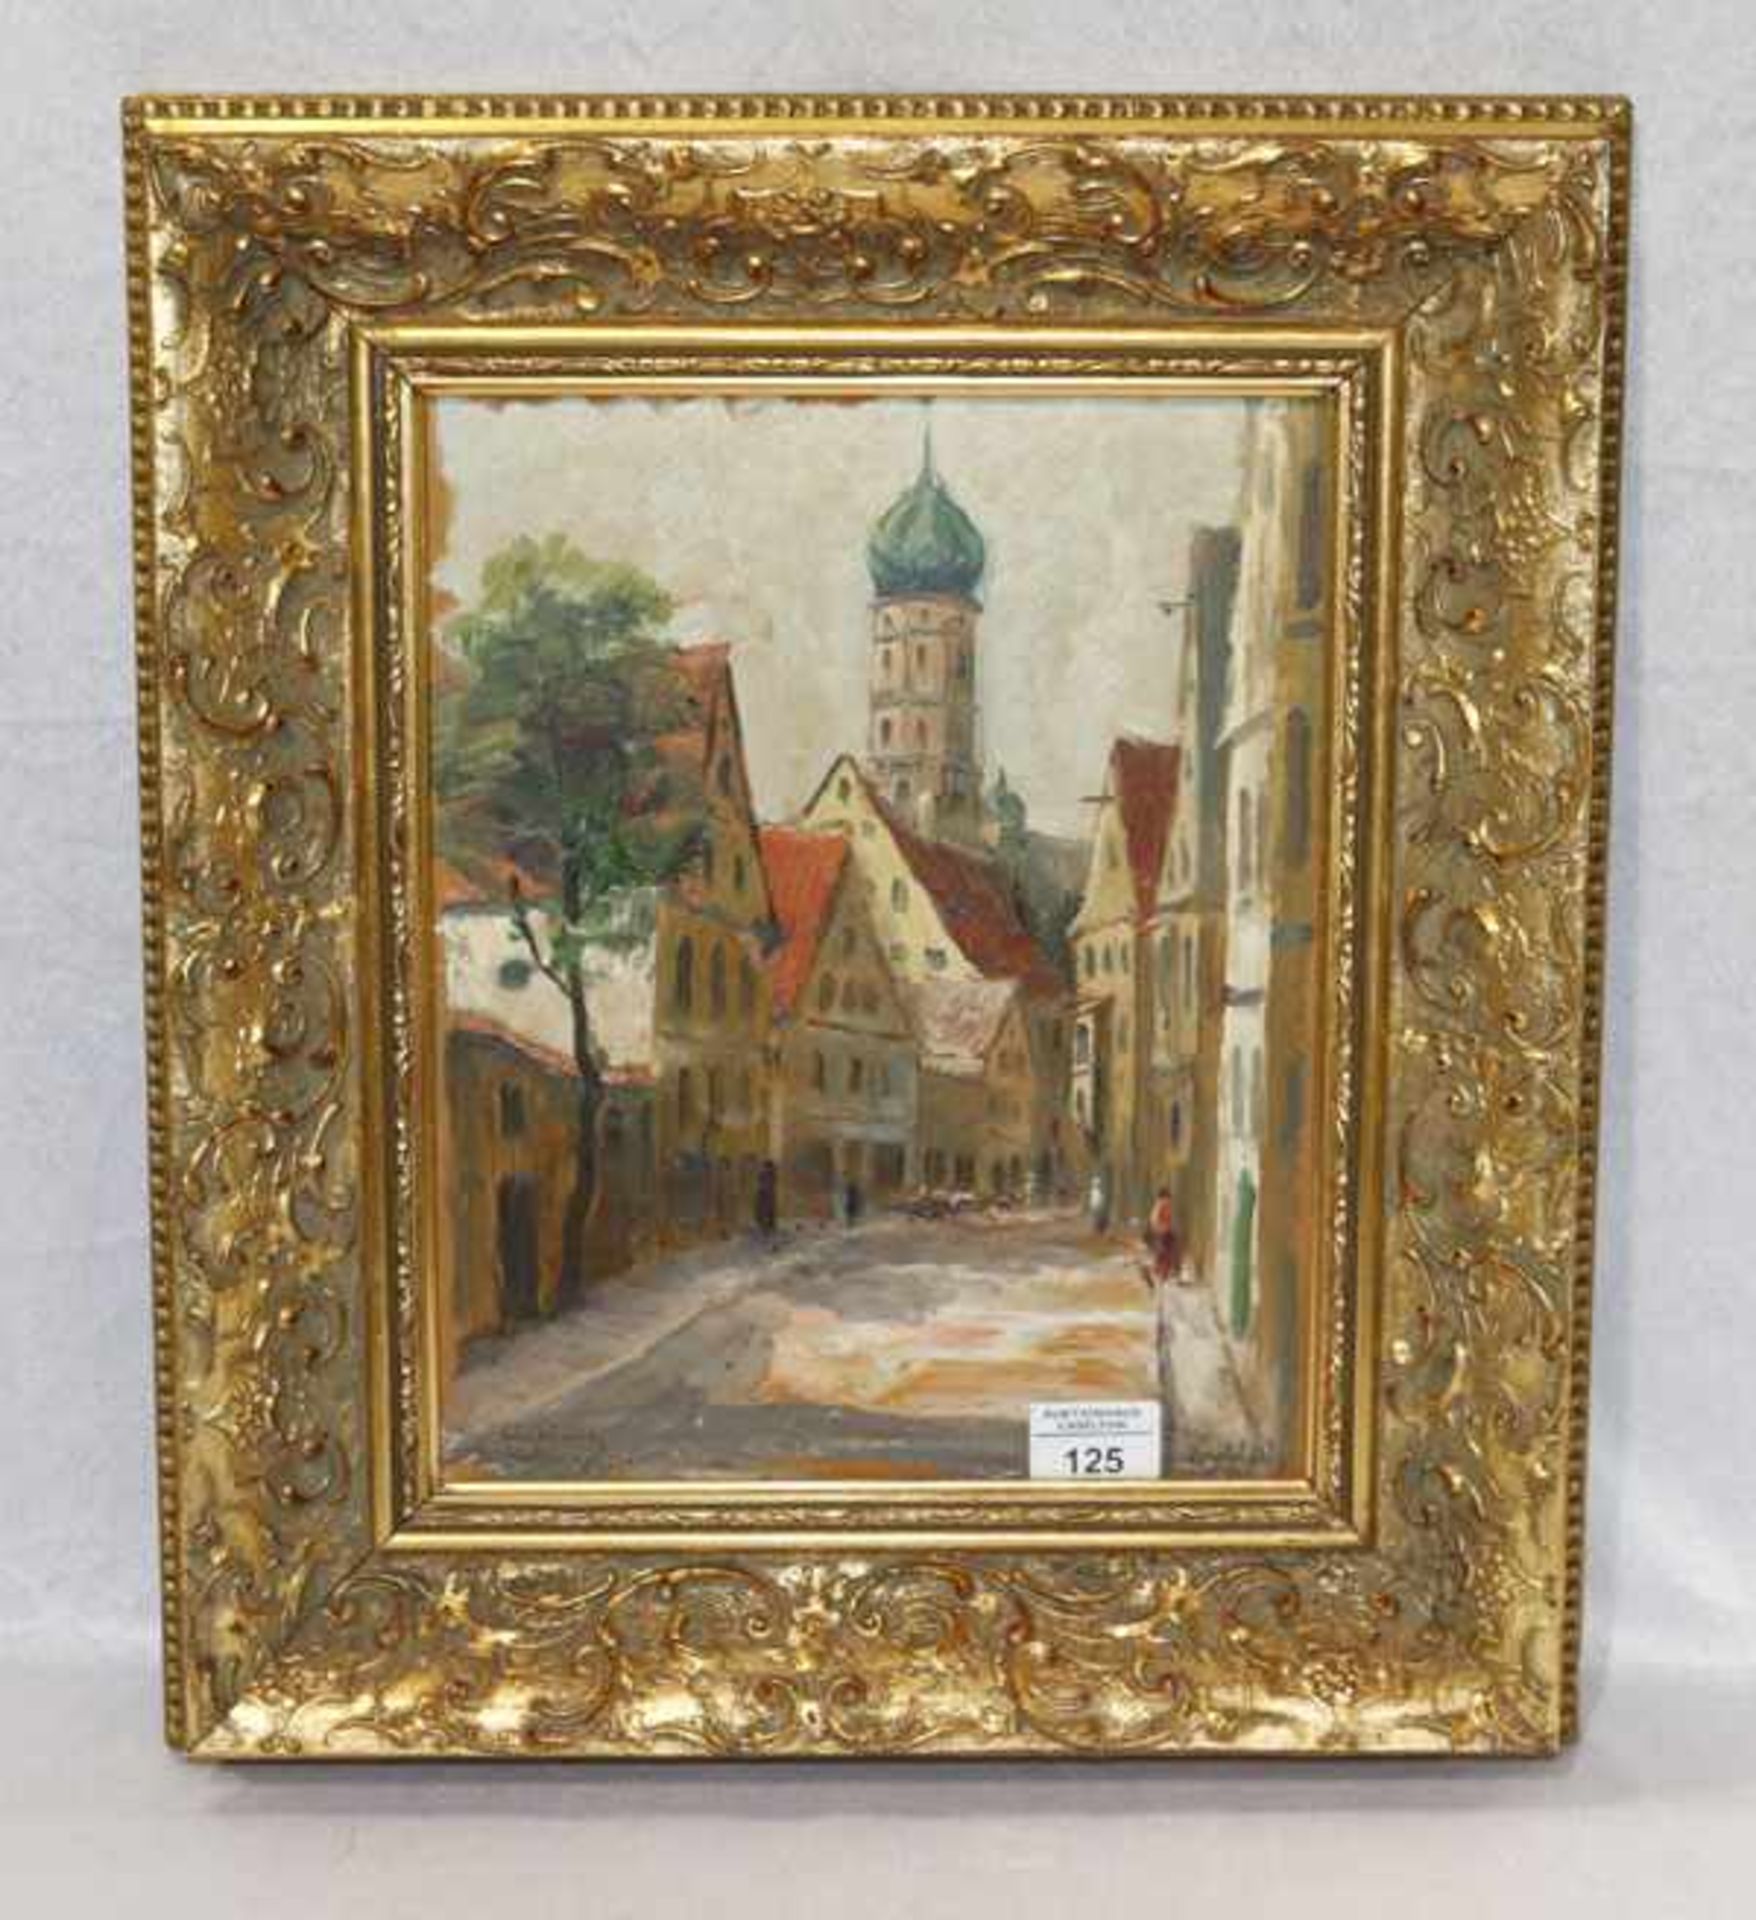 Gemälde ÖL/Hartfaser 'Gassen-Szenerie mit Kirche', signiert Knobloch, * 1881 Böhmisch-Kamnitz + 1964